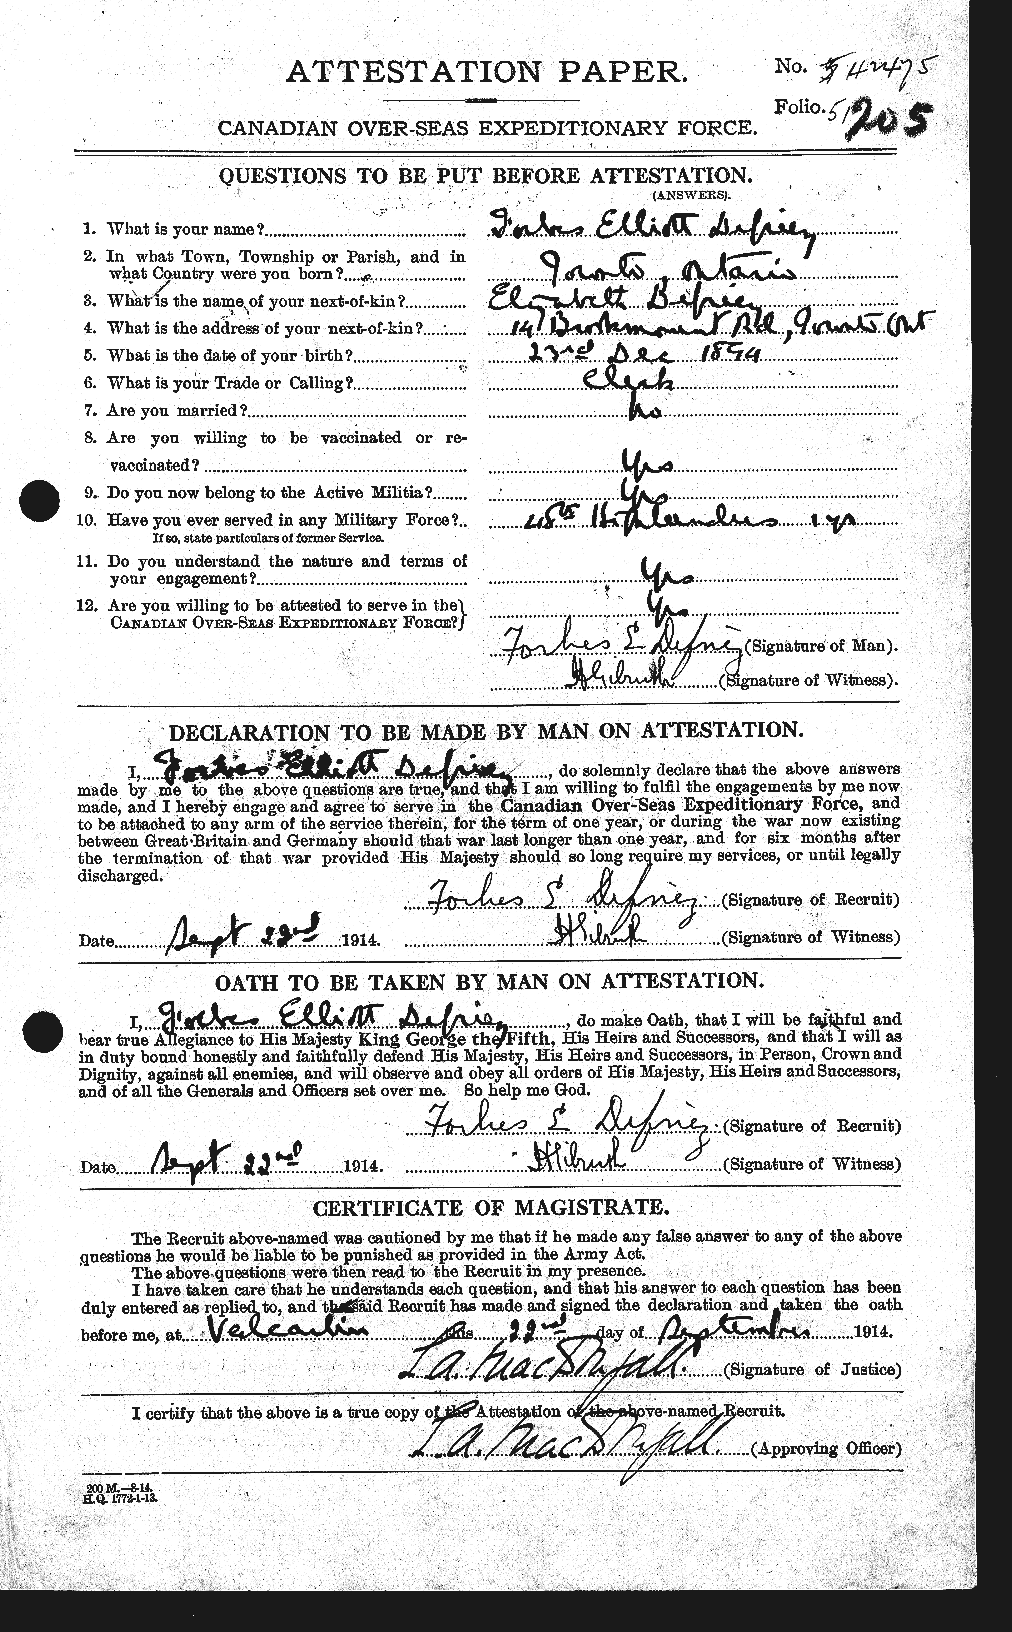 Dossiers du Personnel de la Première Guerre mondiale - CEC 285909a